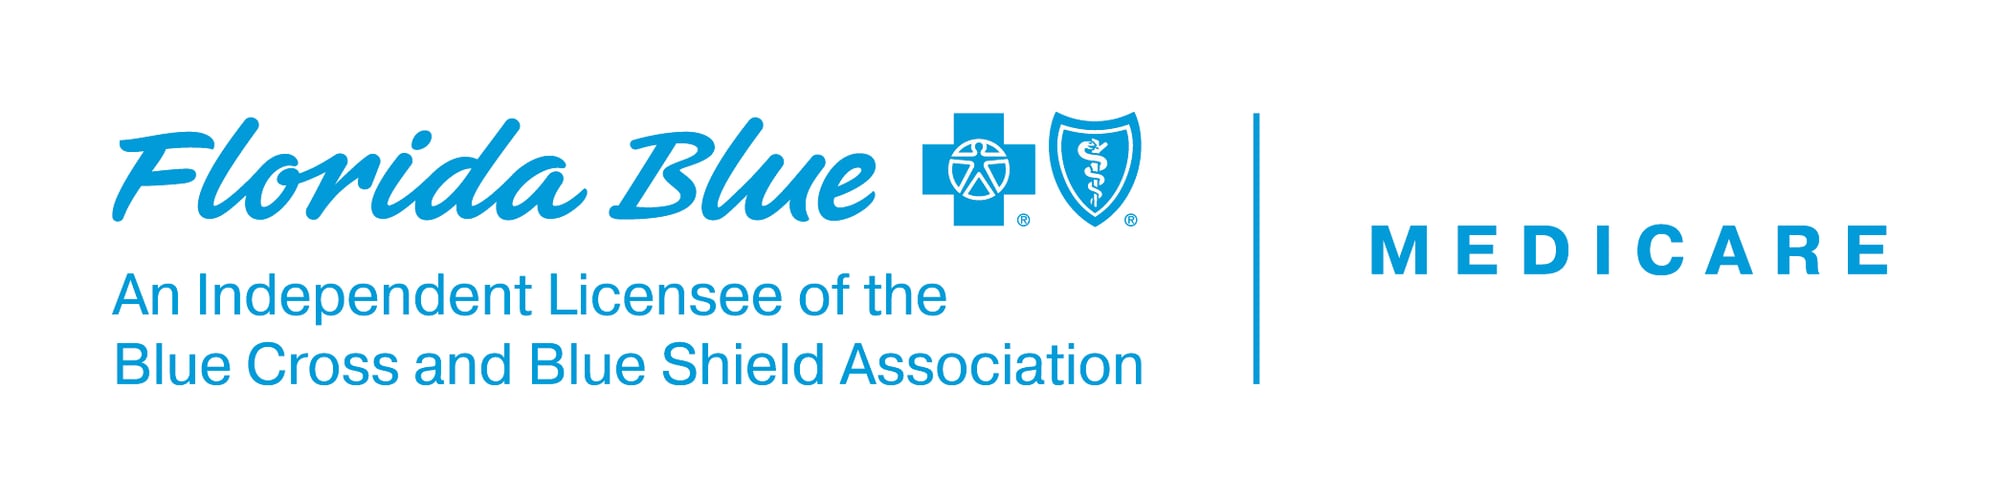 FB_One-Line-Logo_Medicare-Licensee_Blue